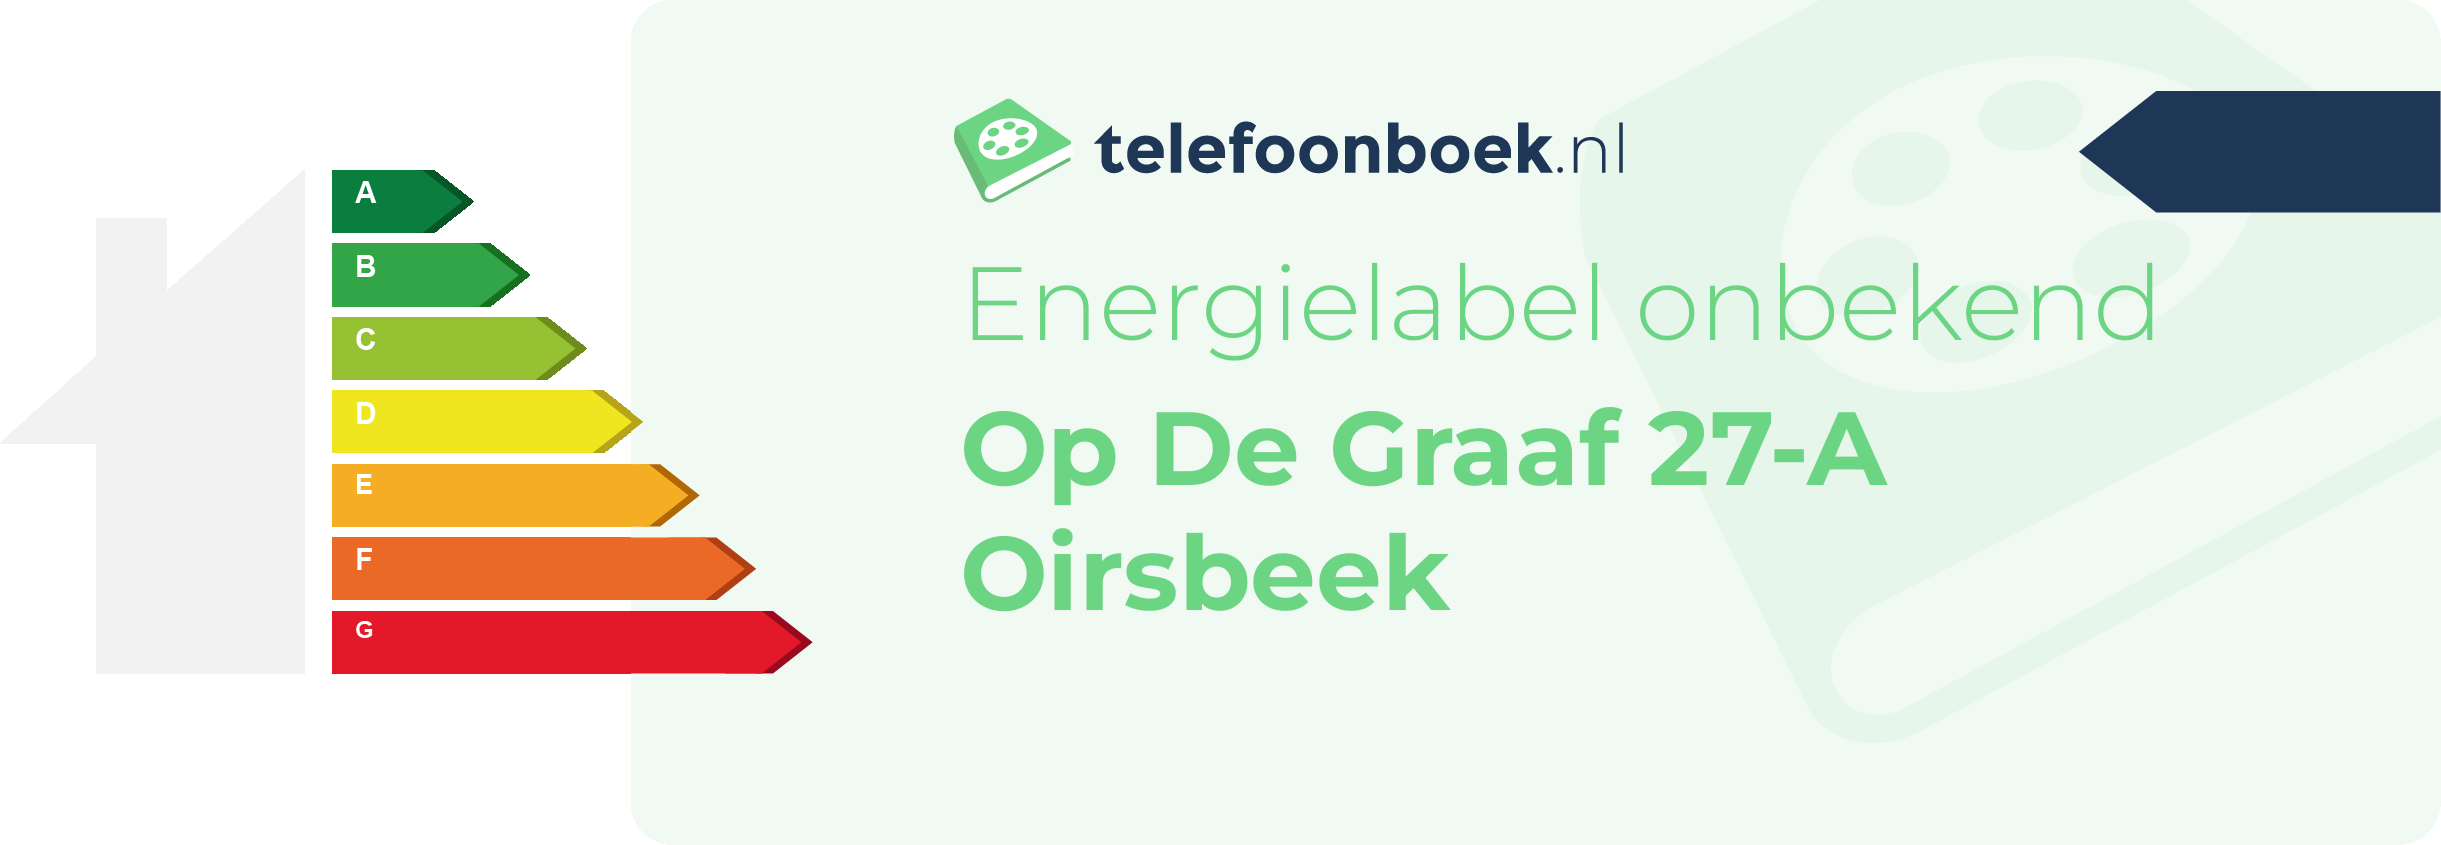 Energielabel Op De Graaf 27-A Oirsbeek